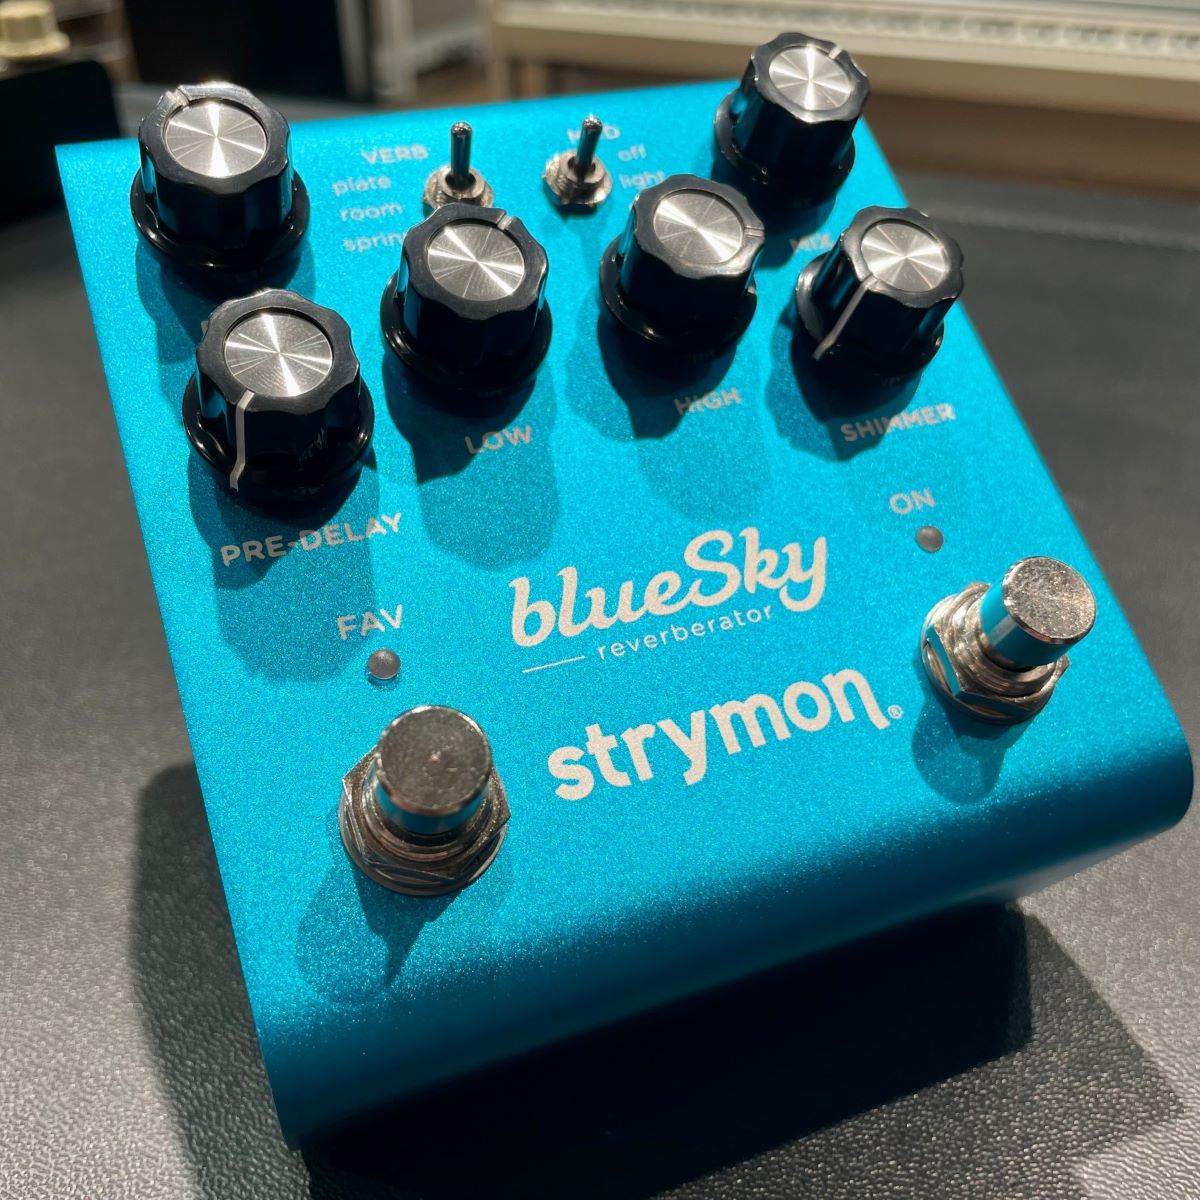 Strymon blueSky Reverberator V.2